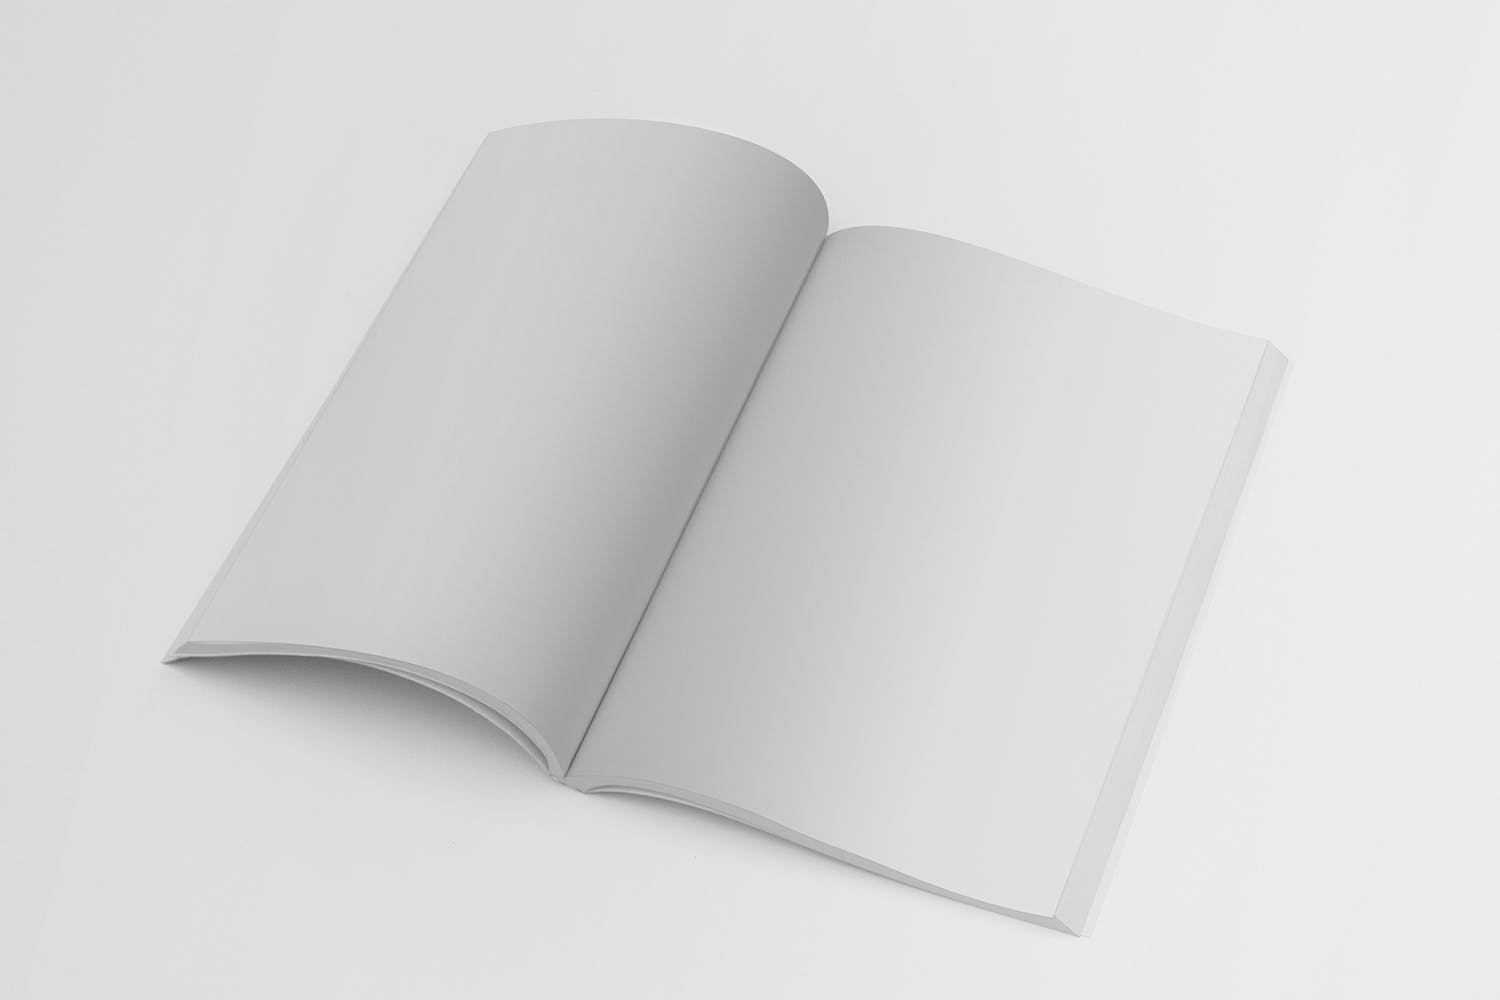 杂志内页版式设计翻页效果图样机第一素材精选 Magazine Mockup Folded Page插图(1)